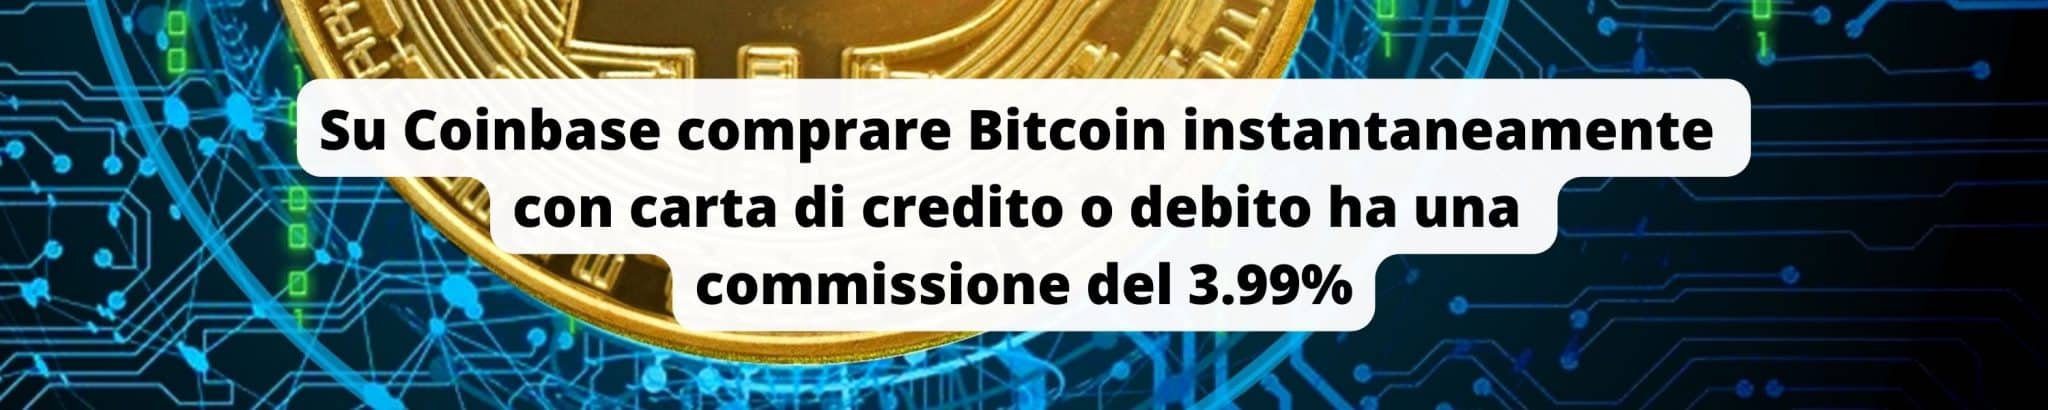 Comprare Bitcoin su Coinbase con carta ha una commissione del 3.99%